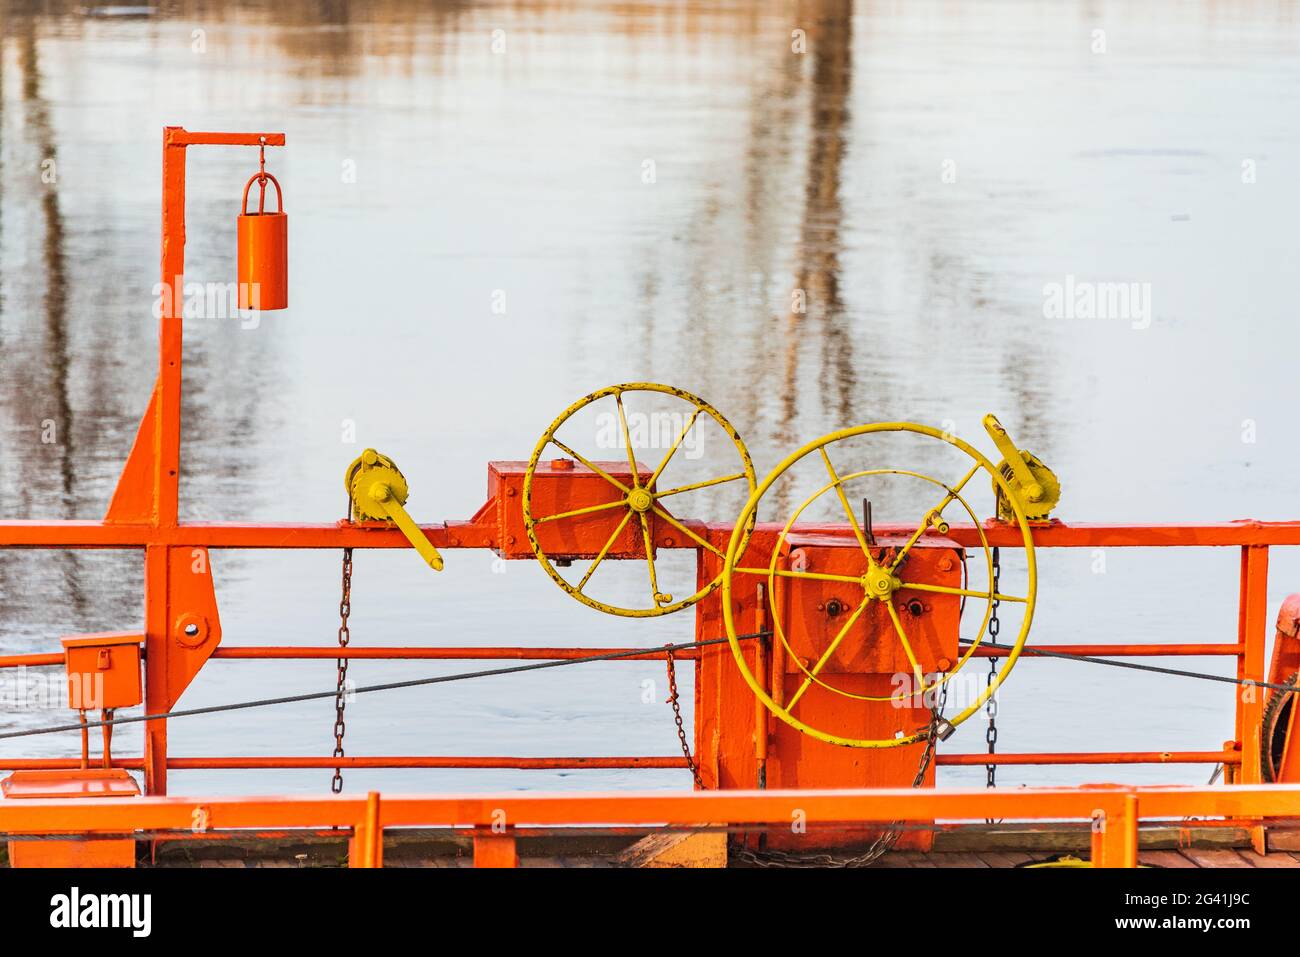 Die Details der Seilfähre, die über einen Fluss durch Kabel verbunden mit beiden Ufer. Die orange Kettenfähre, gelbes Lenkrad und blaues Wasser Stockfoto